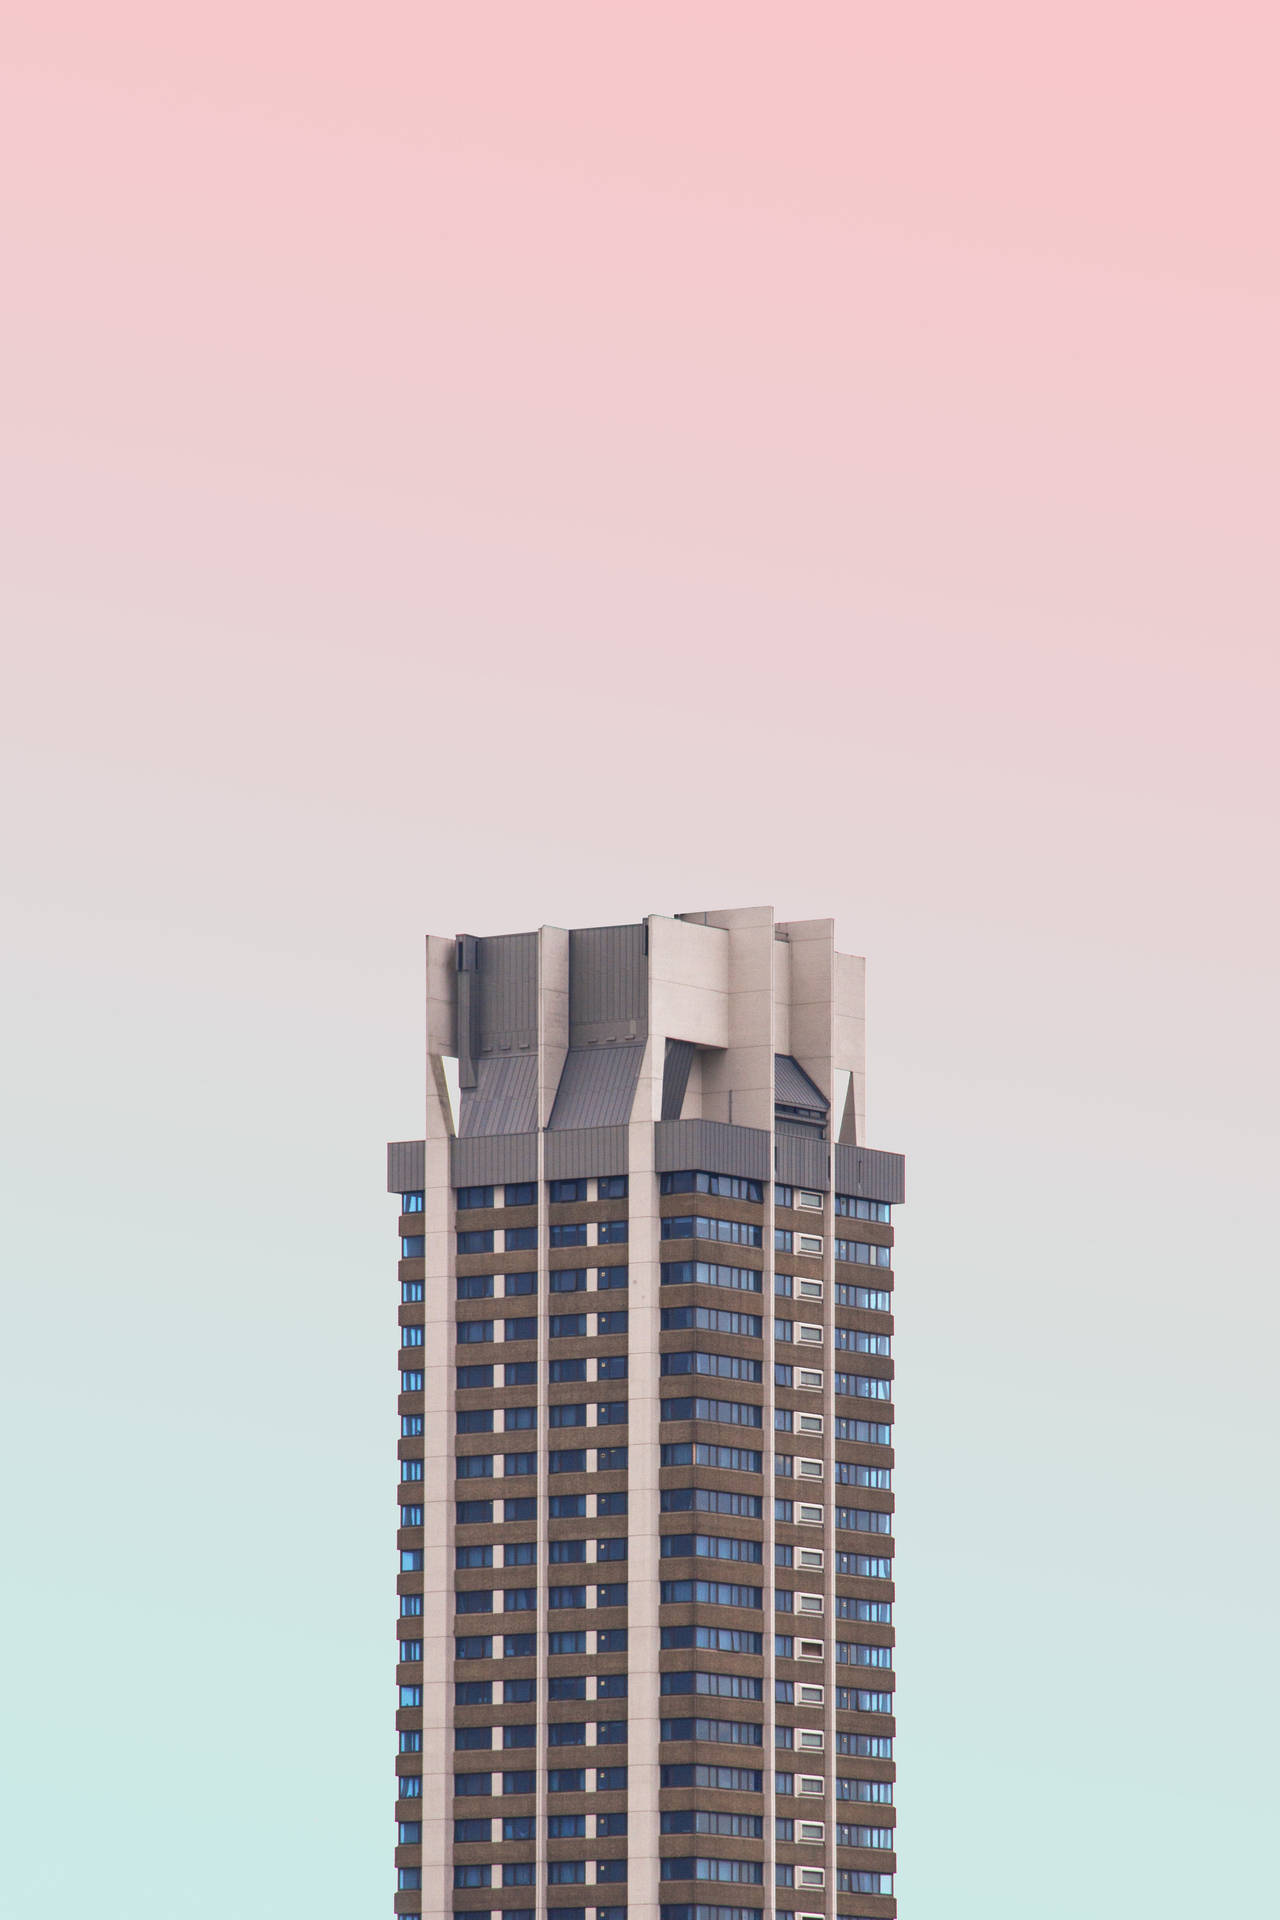 Basil Spence Grattacielo Regno Unito Sfondo